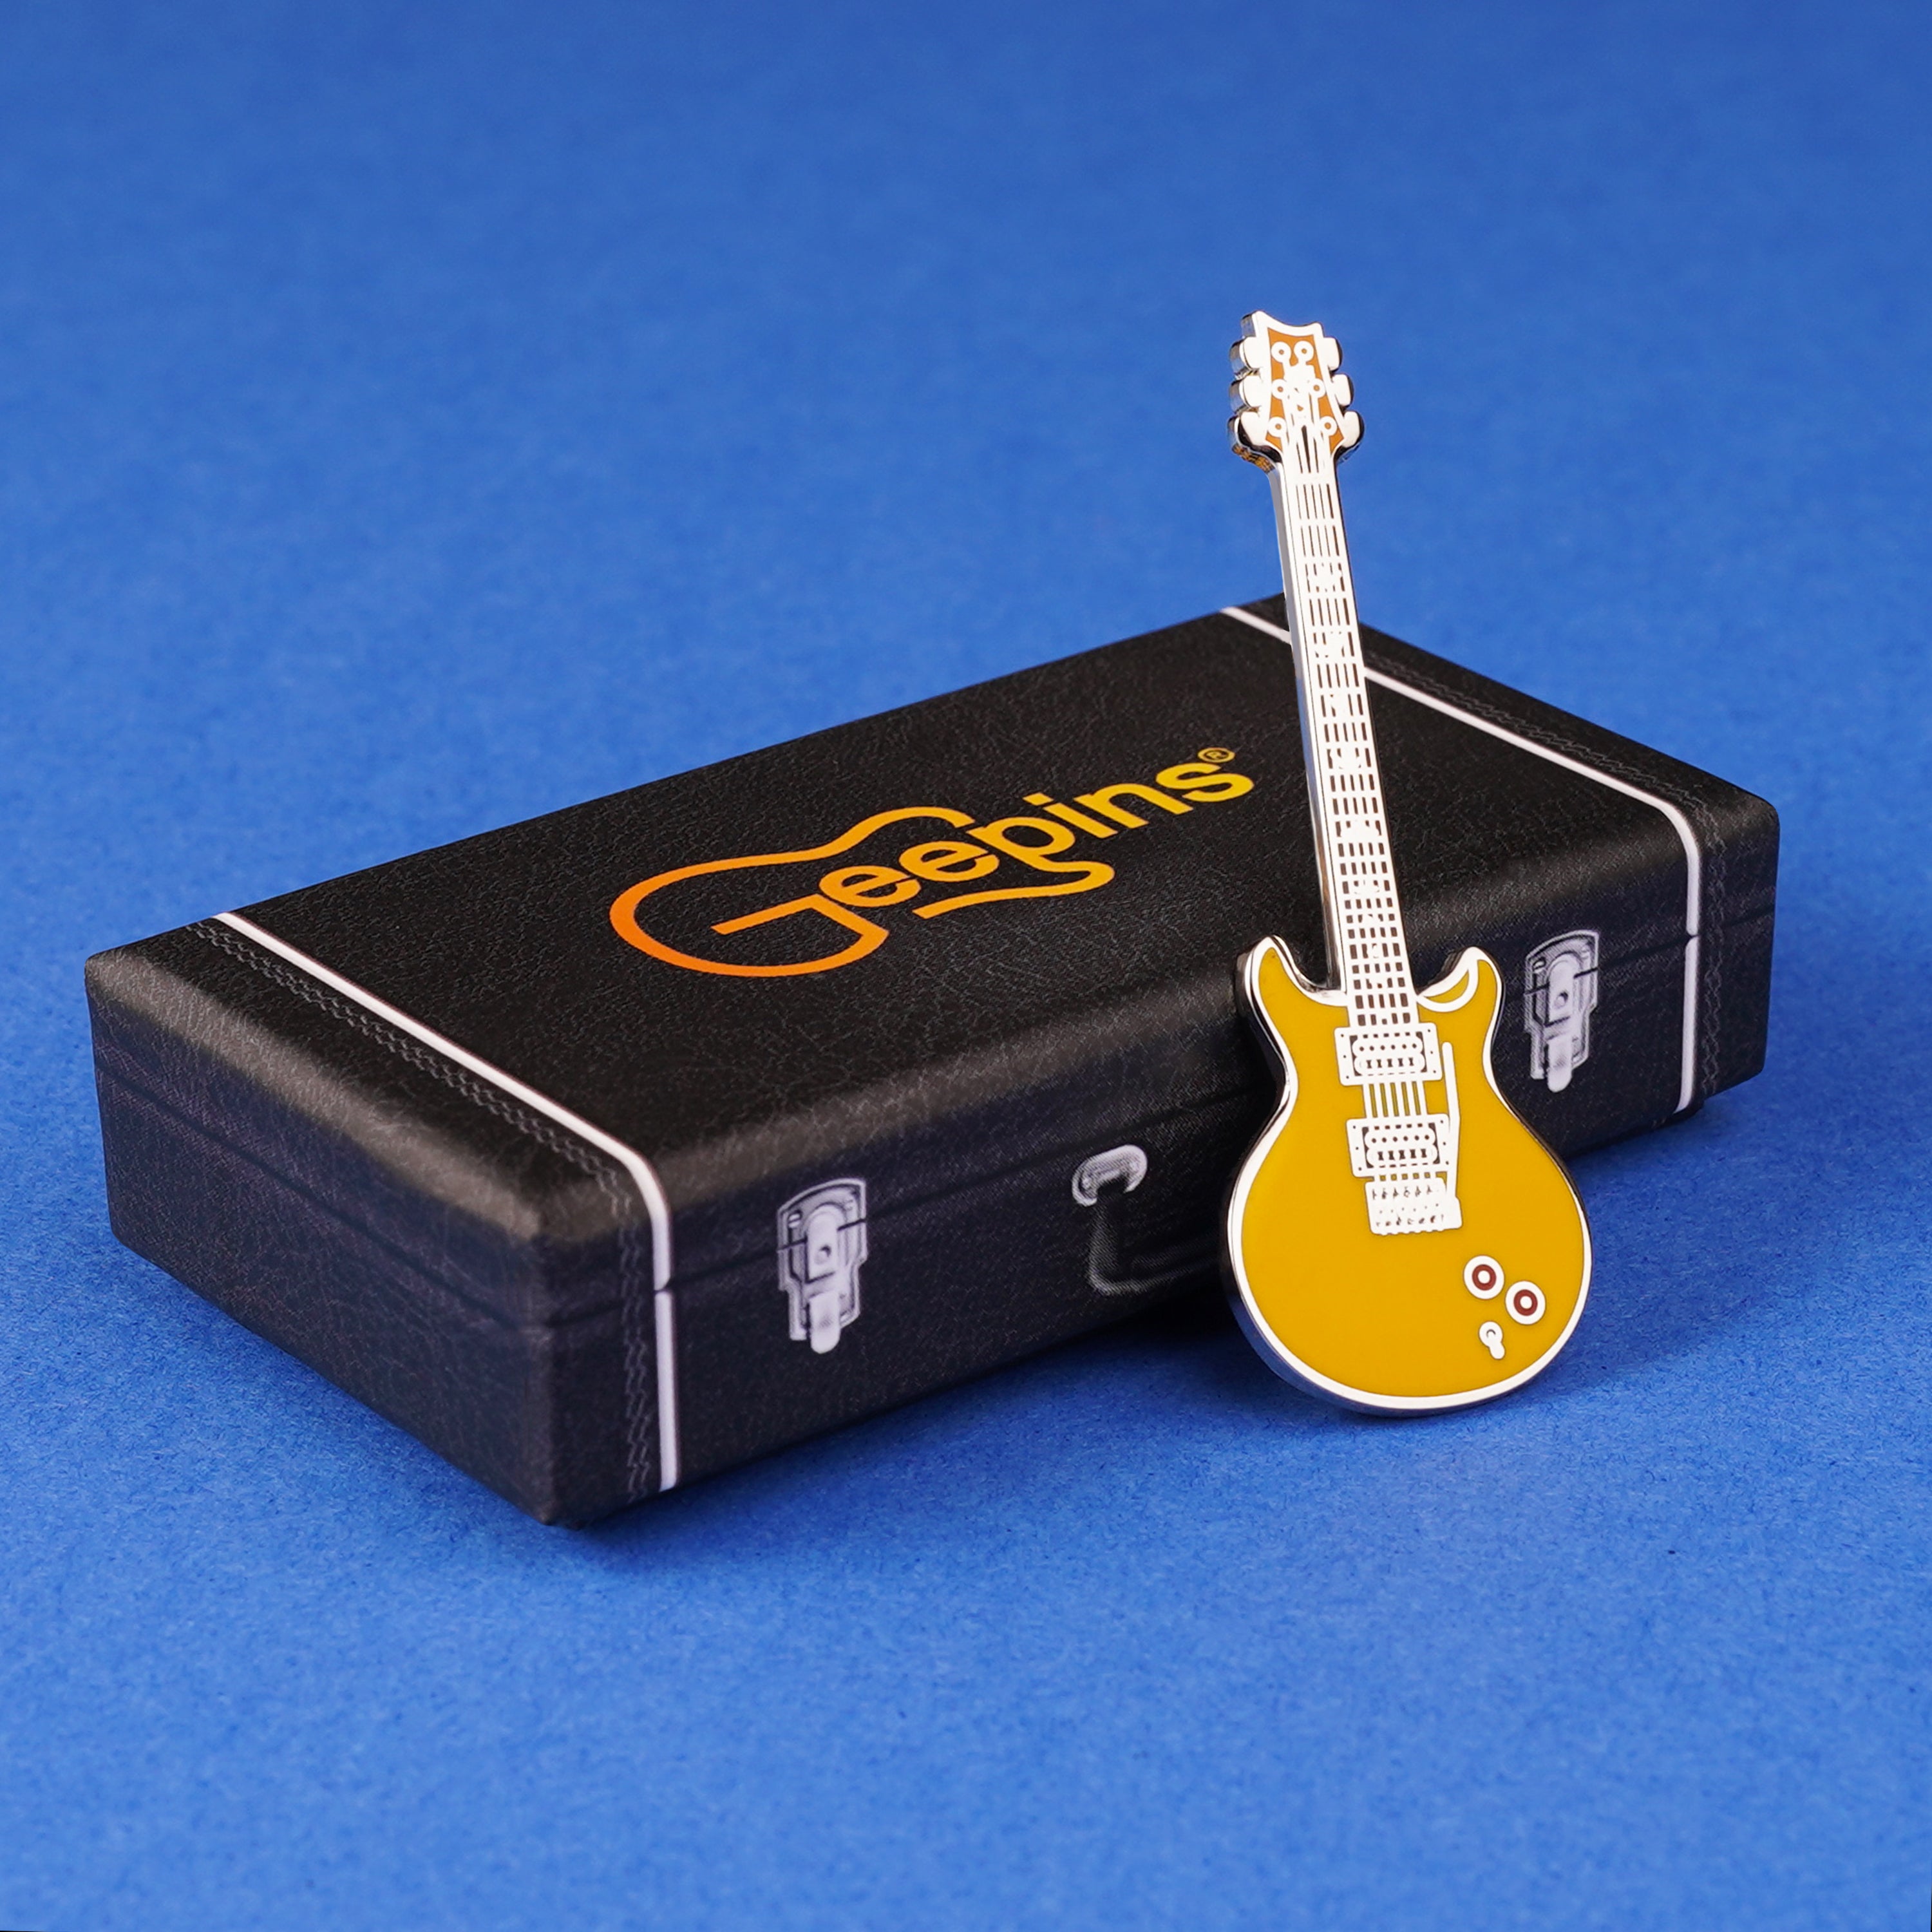 Geepin PRS Santana Guitar Pin